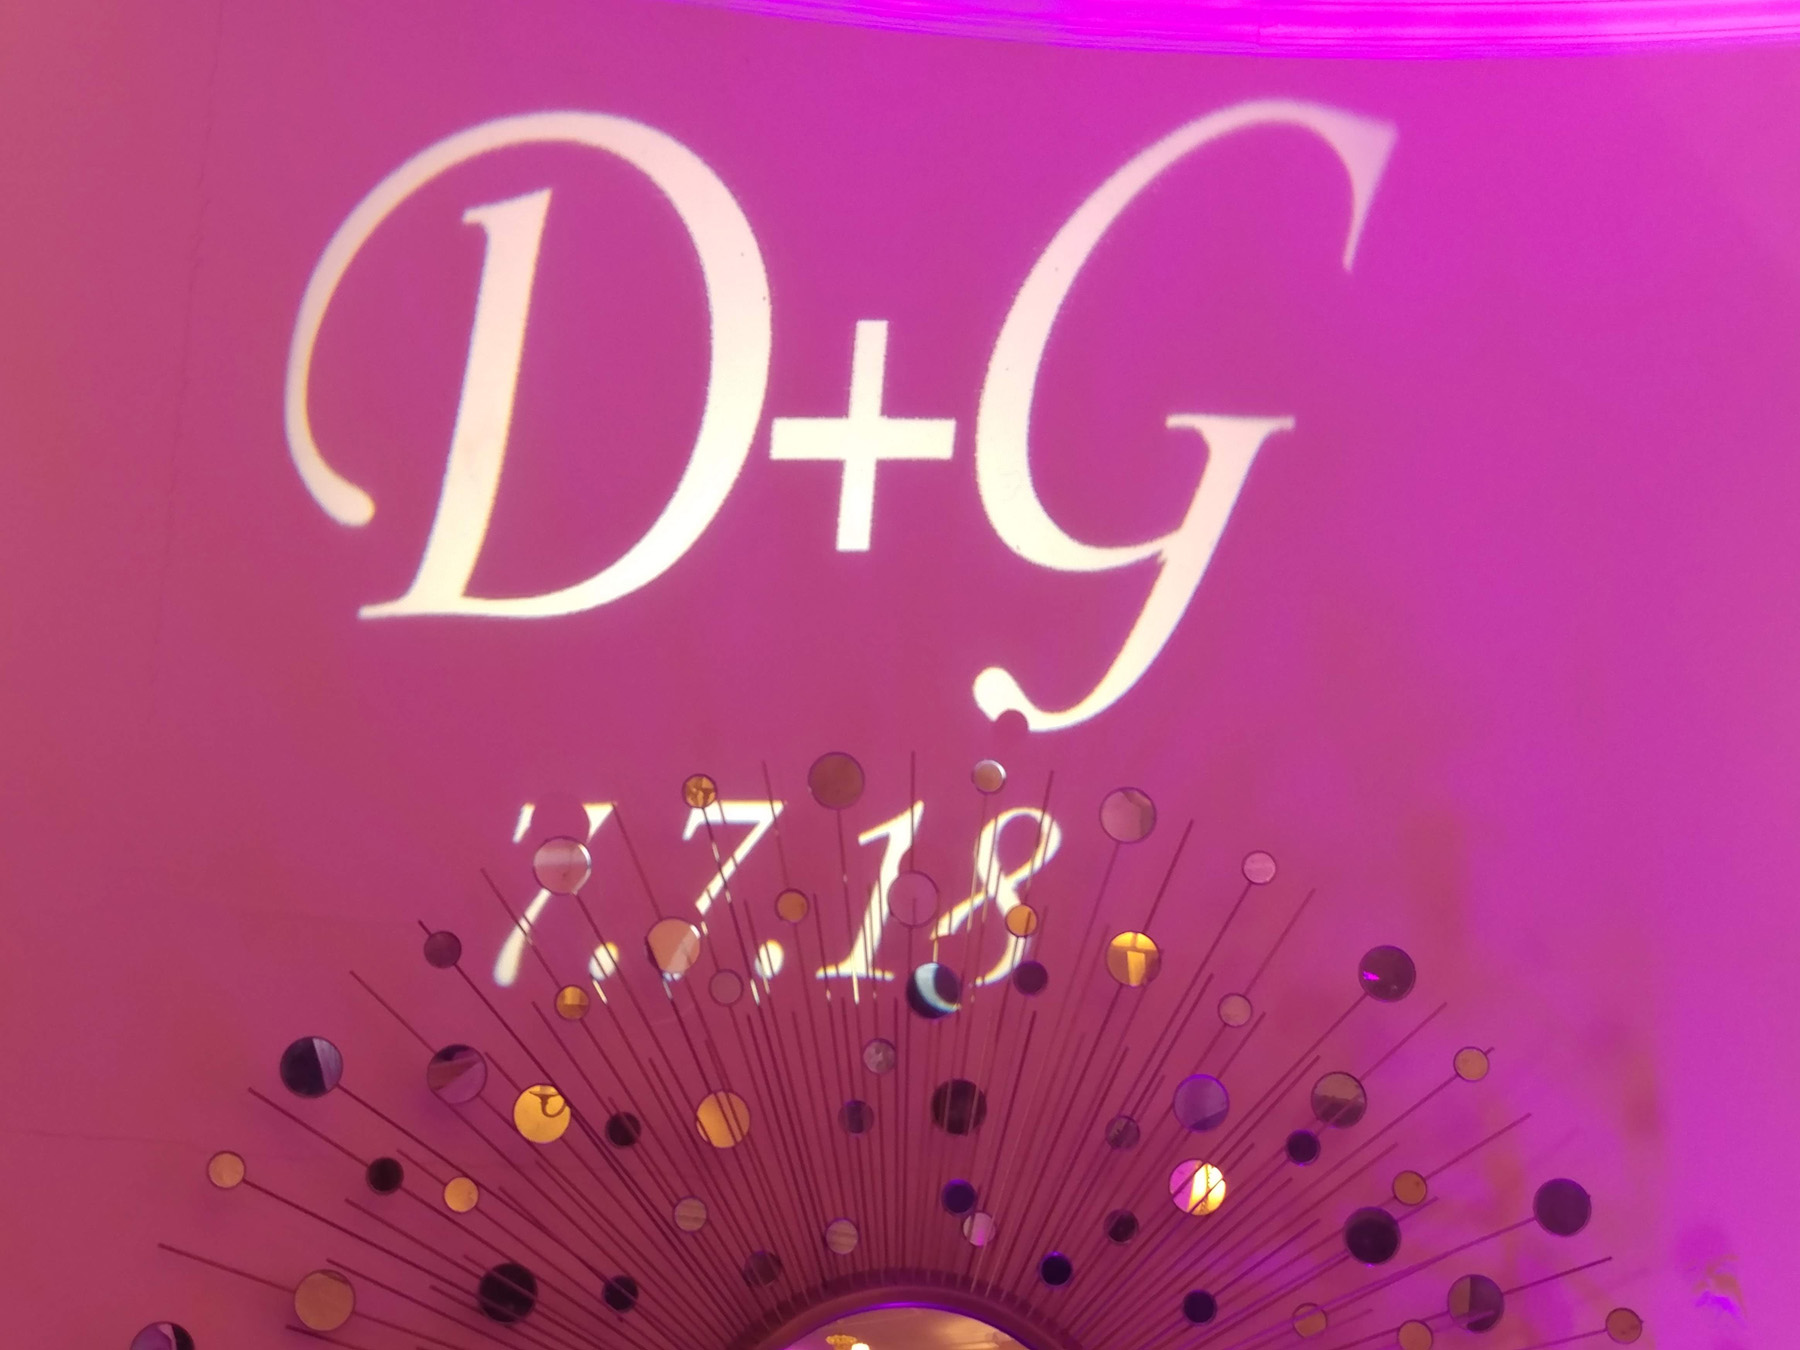 D+G Pink